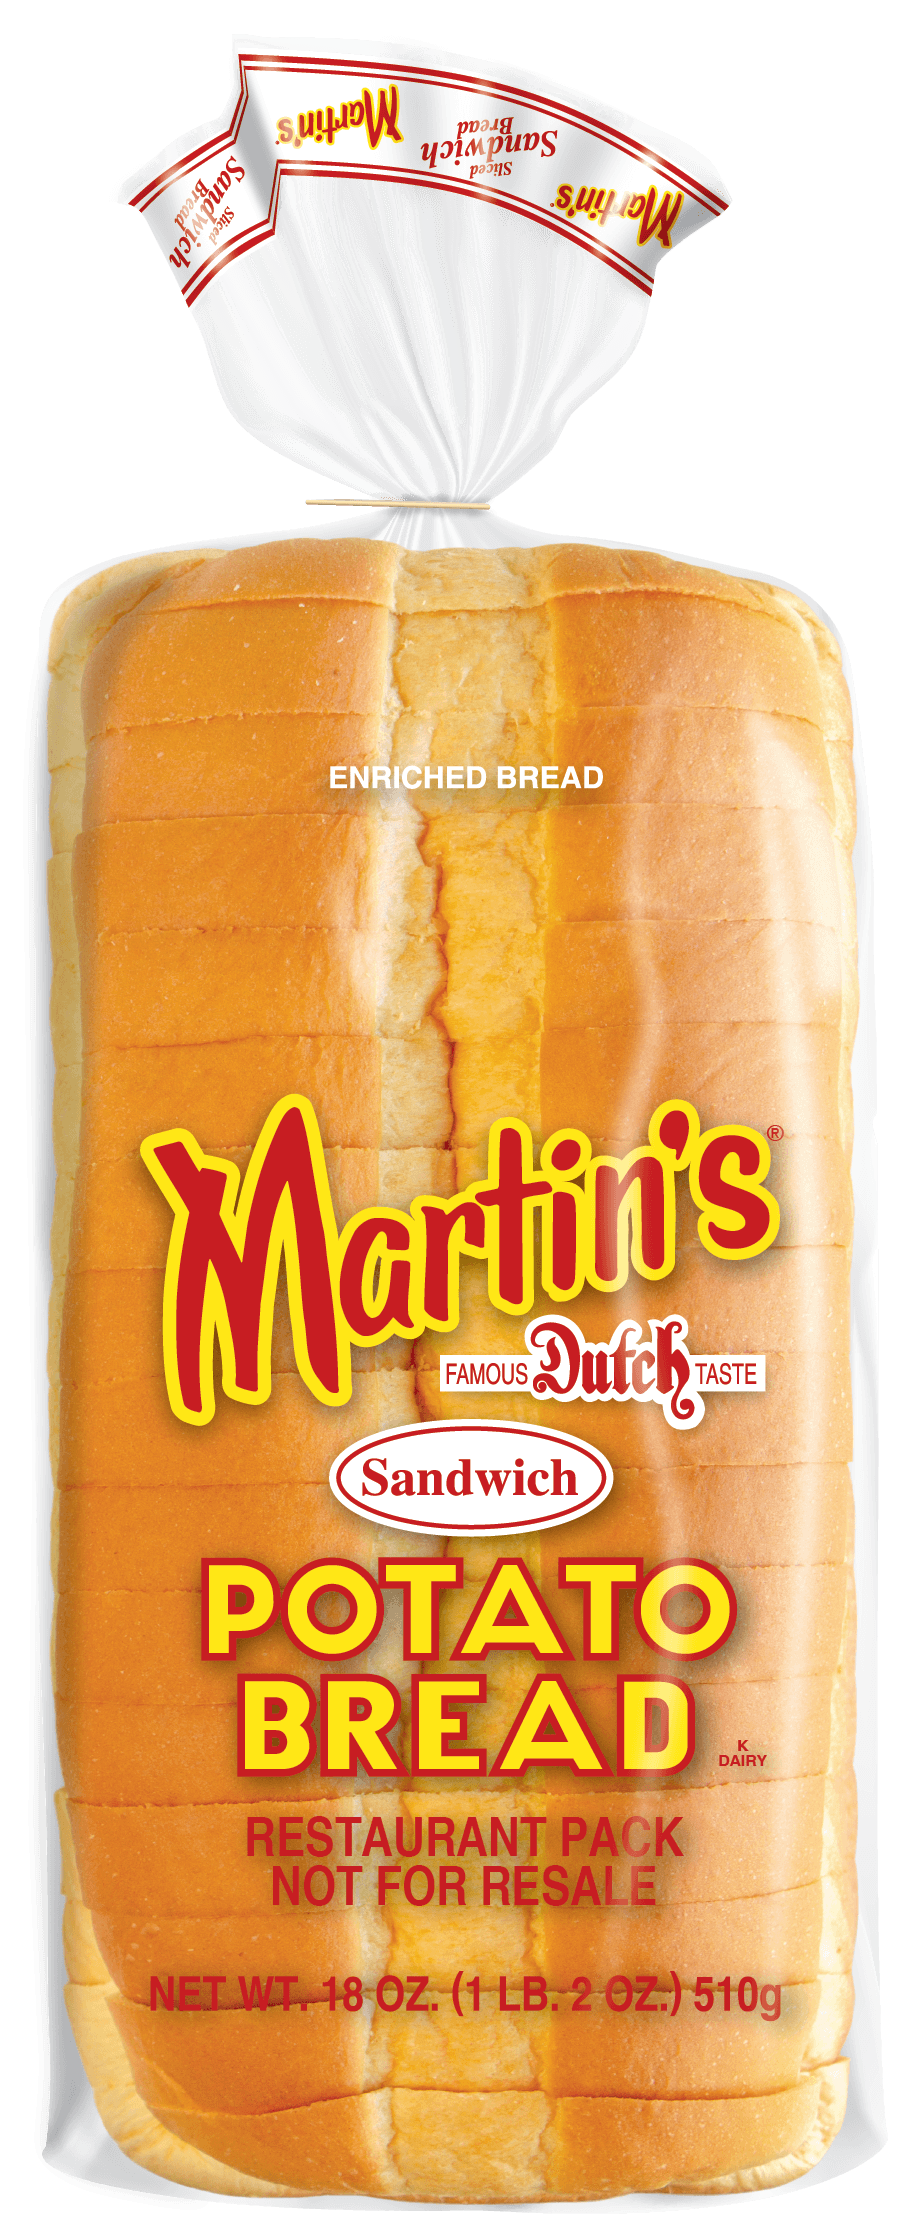 Martin's Potato Bread - Institutional